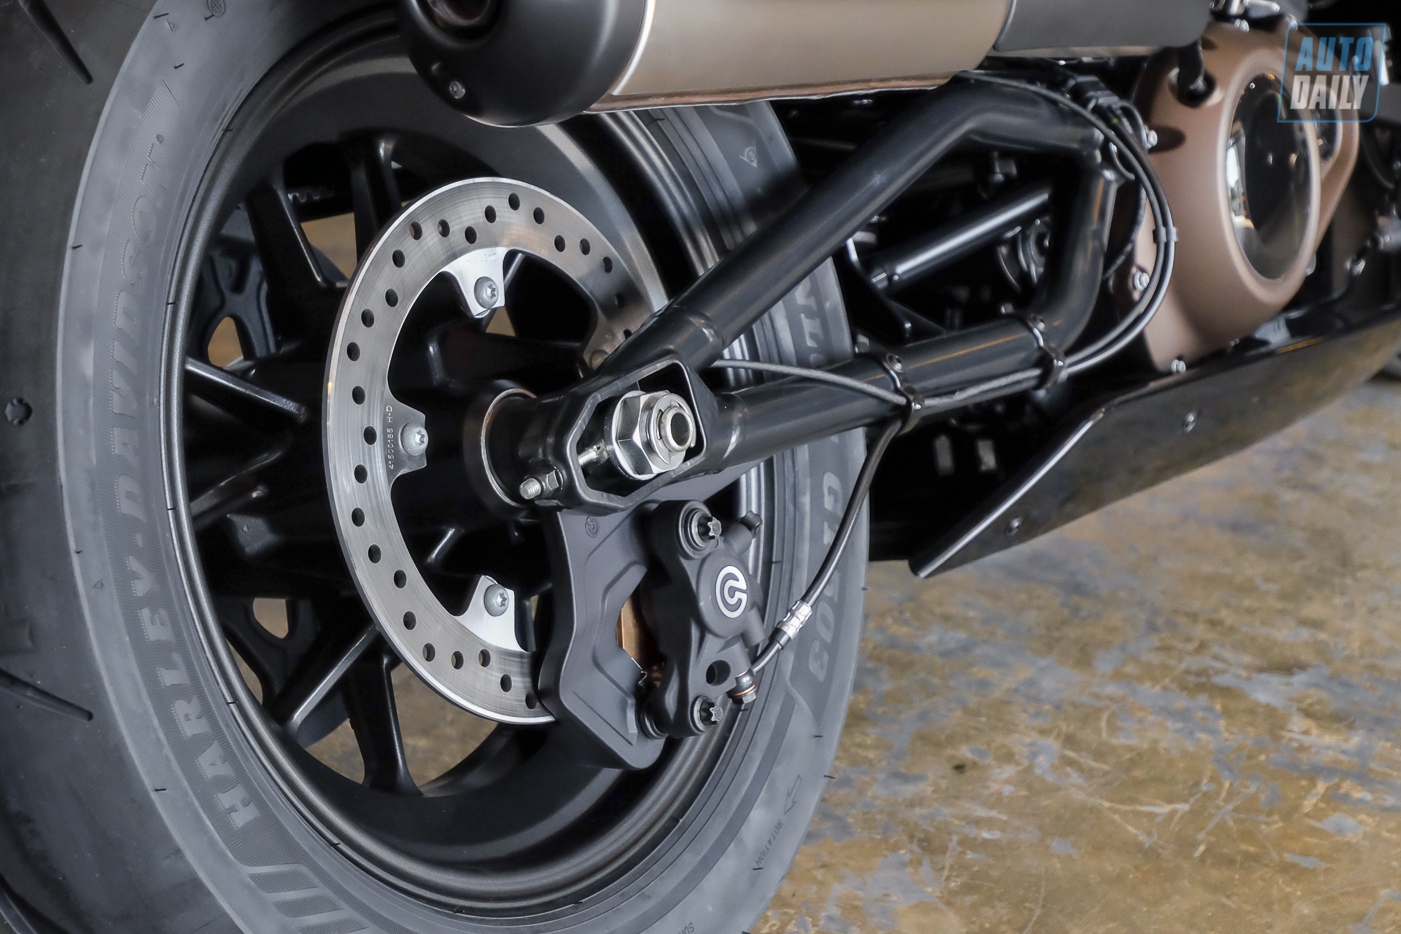 Cận cảnh Harley-Davidson Sportster S giá từ 589 triệu đồng tại Việt Nam Harley-Davidson Sportster S (8).jpg